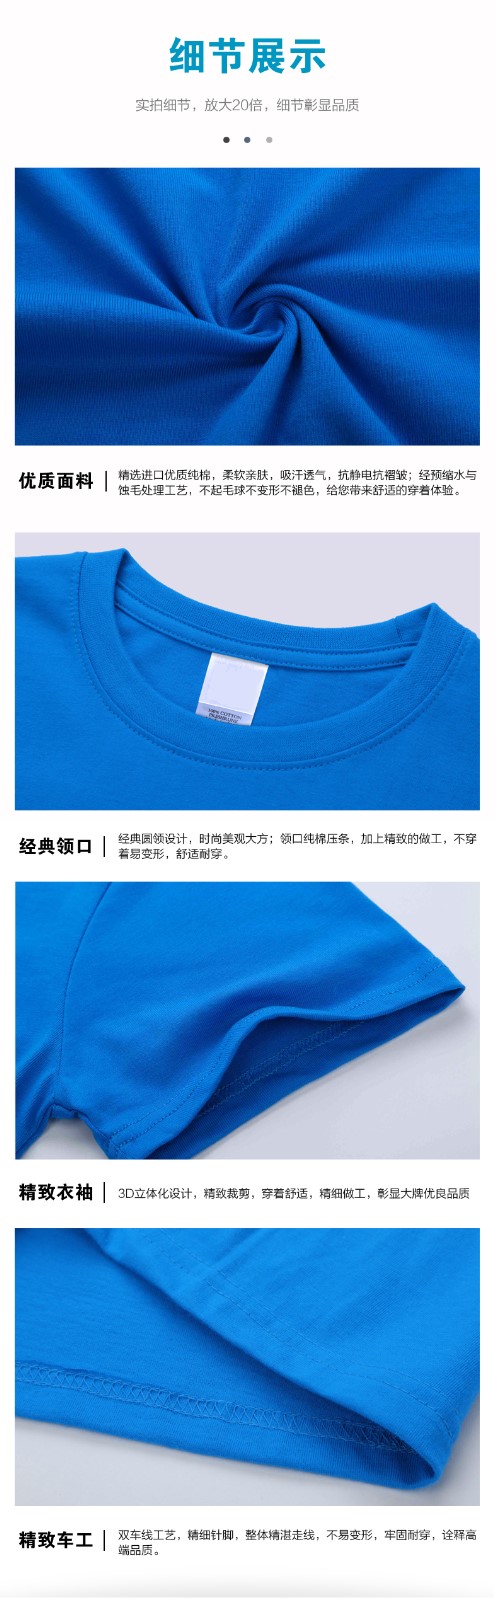 純棉班服定制t恤夏季圓領短袖同學聚會衣服團體服文化衫印字印圖(圖8)